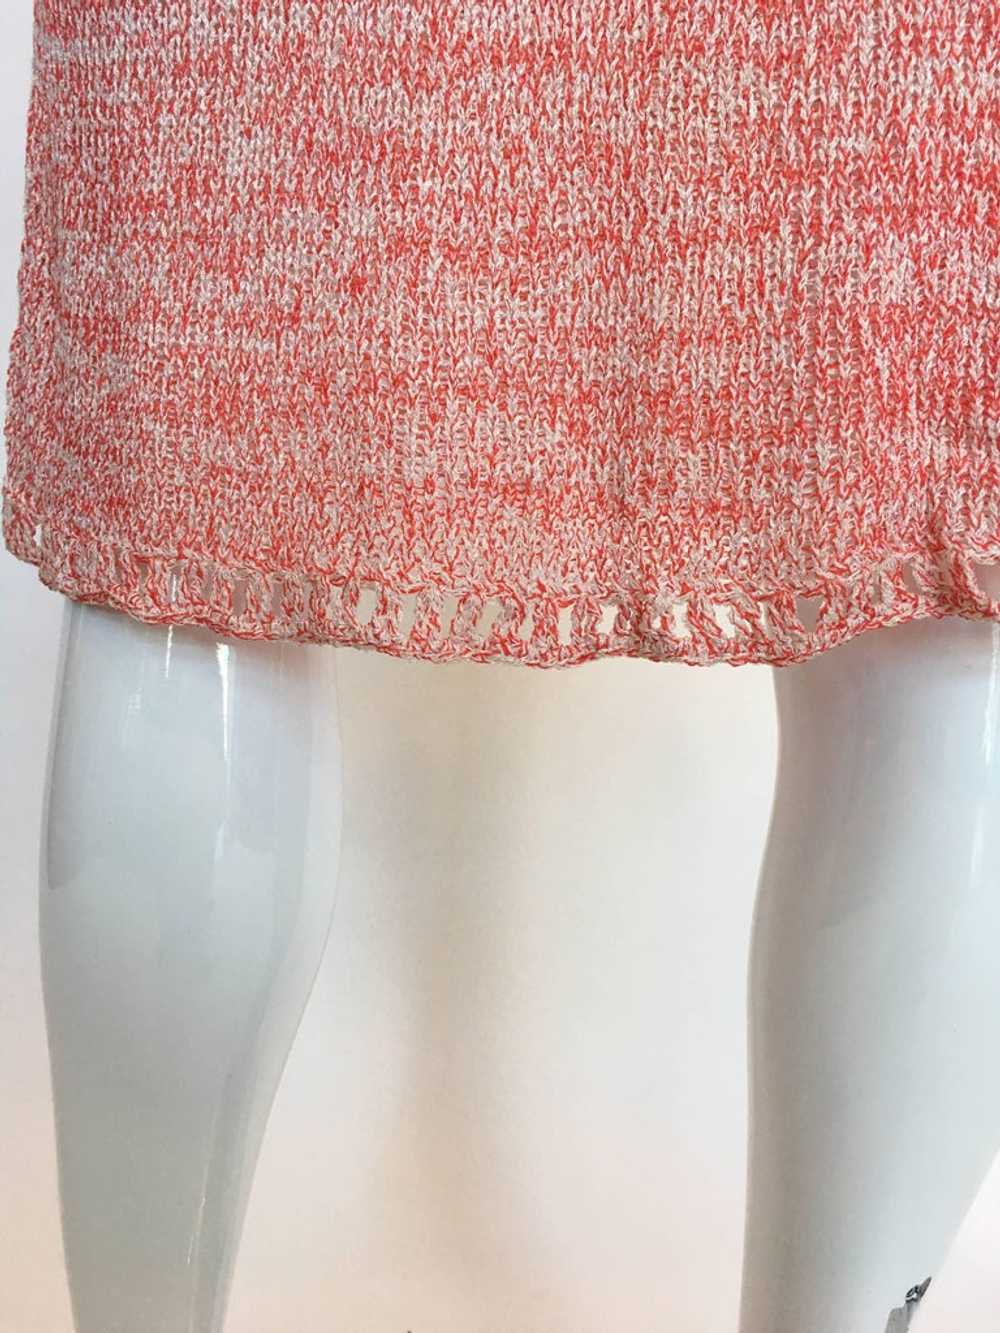 Helga Howie 1970's Knit Space Dye Dress - image 10